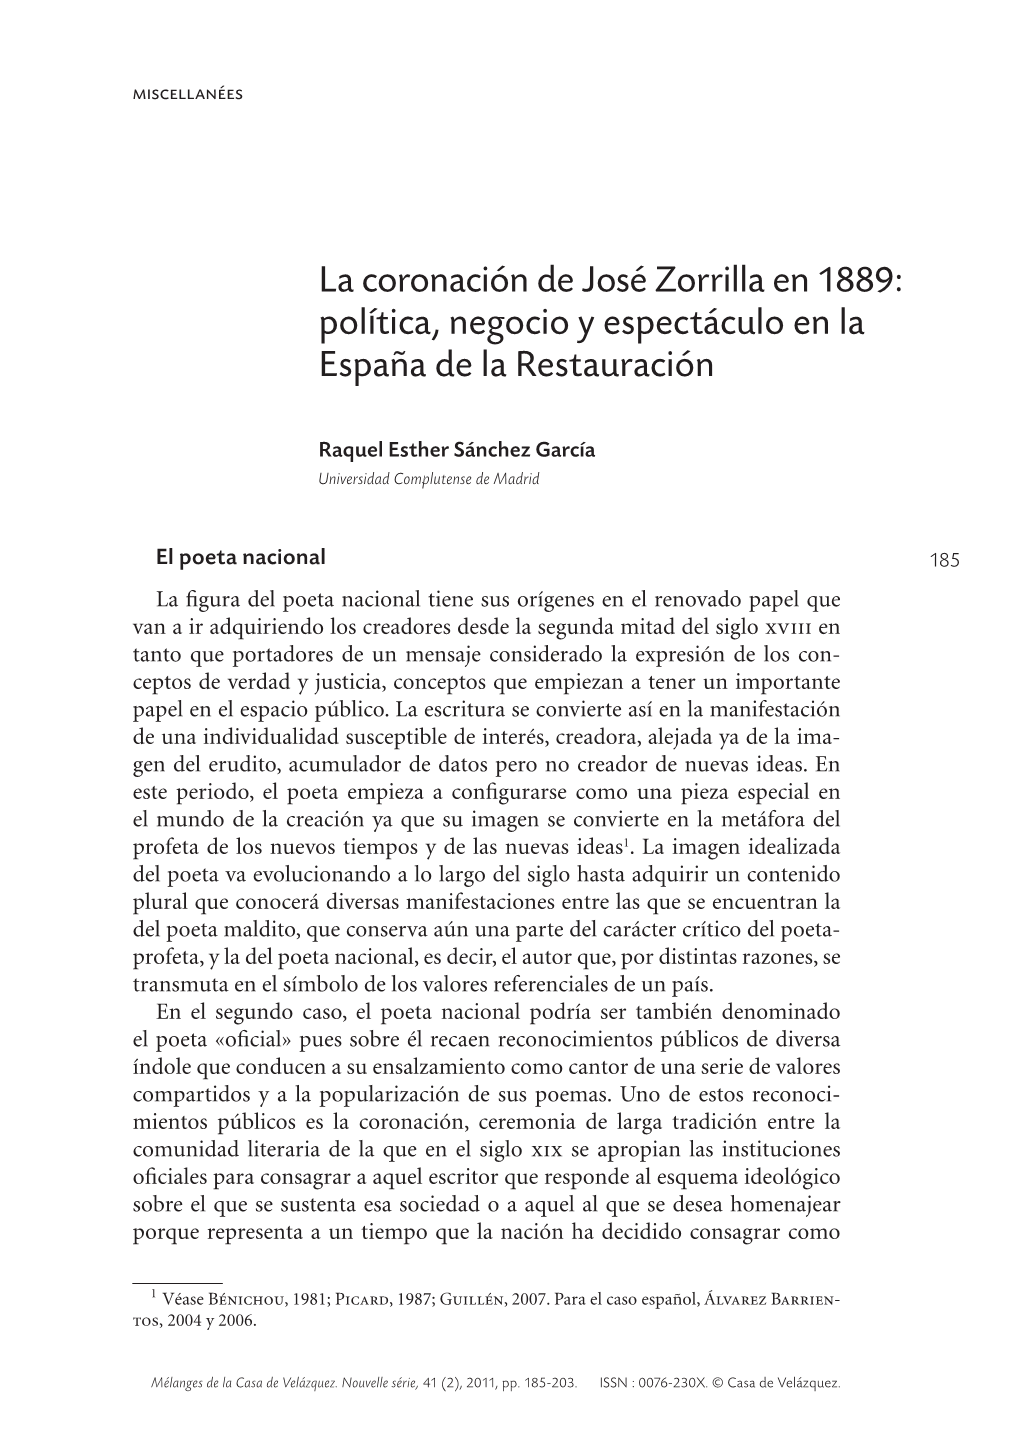 La Coronación De José Zorrilla En 1889: Política, Negocio Y Espectáculo En La España De La Restauración